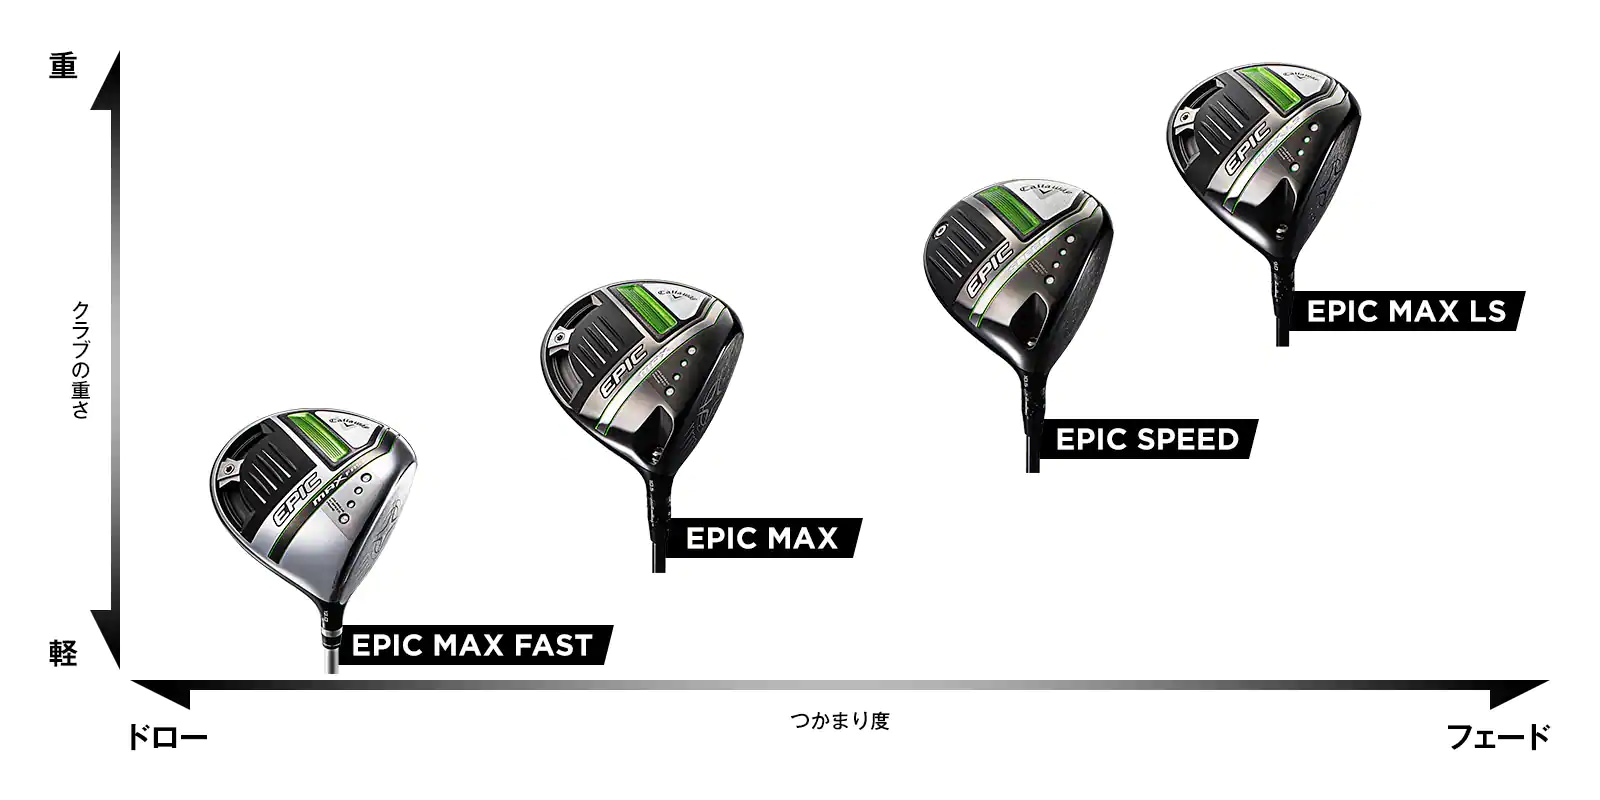 全日本送料無料 キャロウェイ ドライバー EPIC MAX LS 9.0